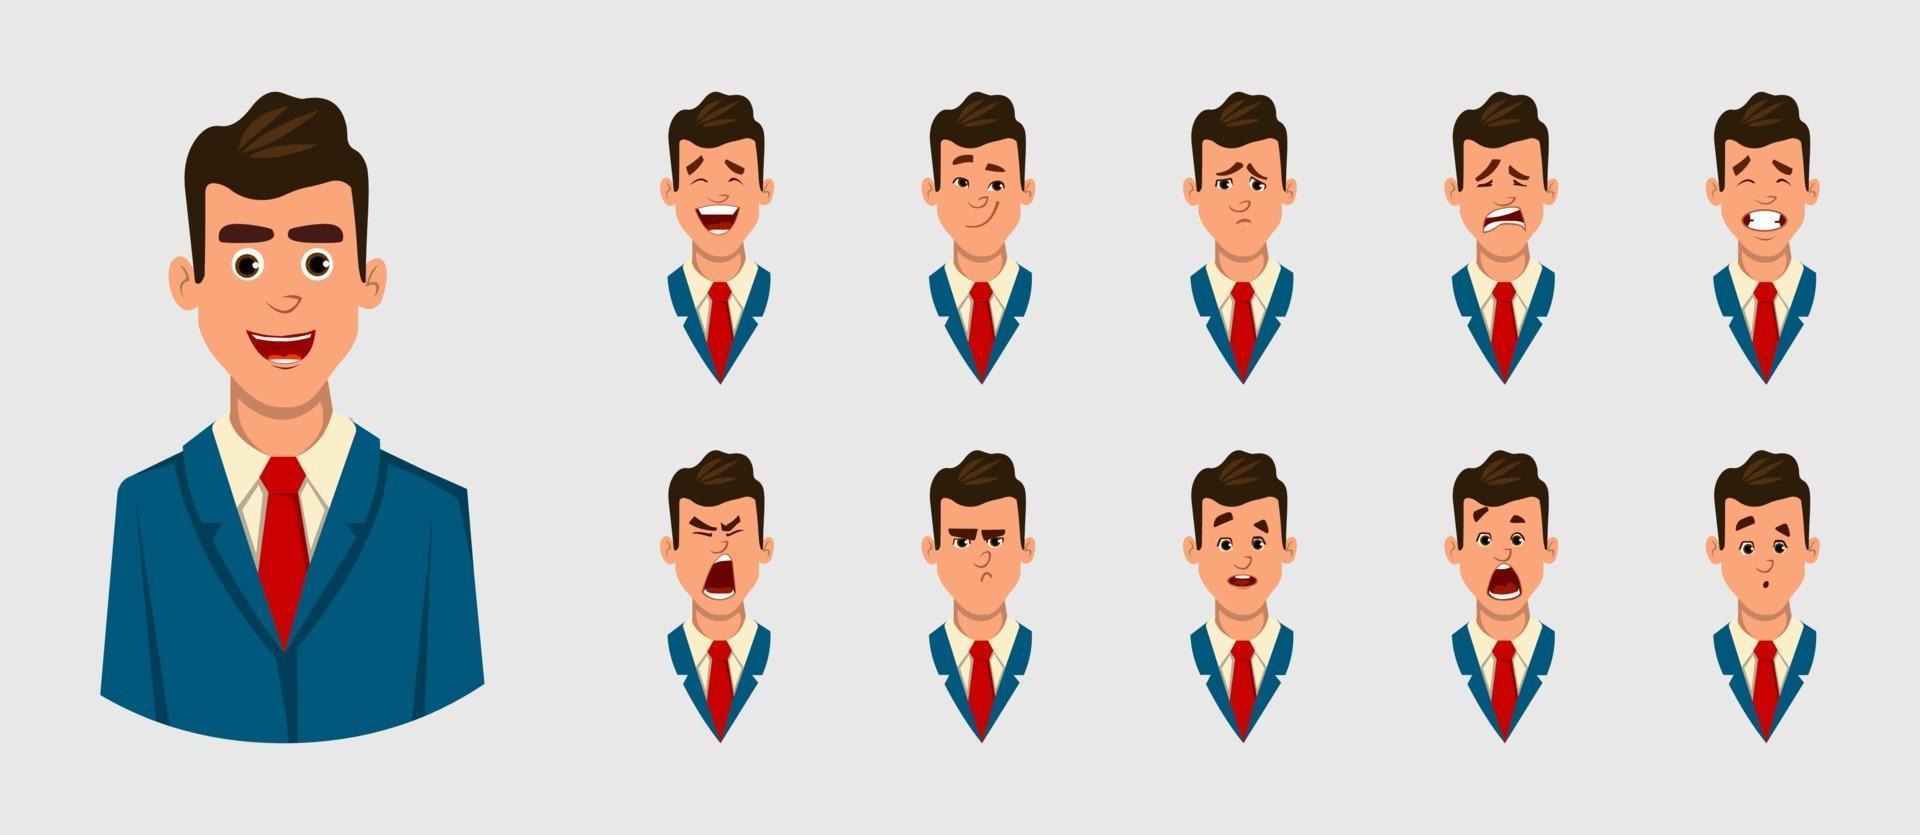 uomo d'affari diverse emozioni facciali per animazione, movimento o qualcos'altro. illustrazione di carattere vettoriale per la progettazione o l'animazione.